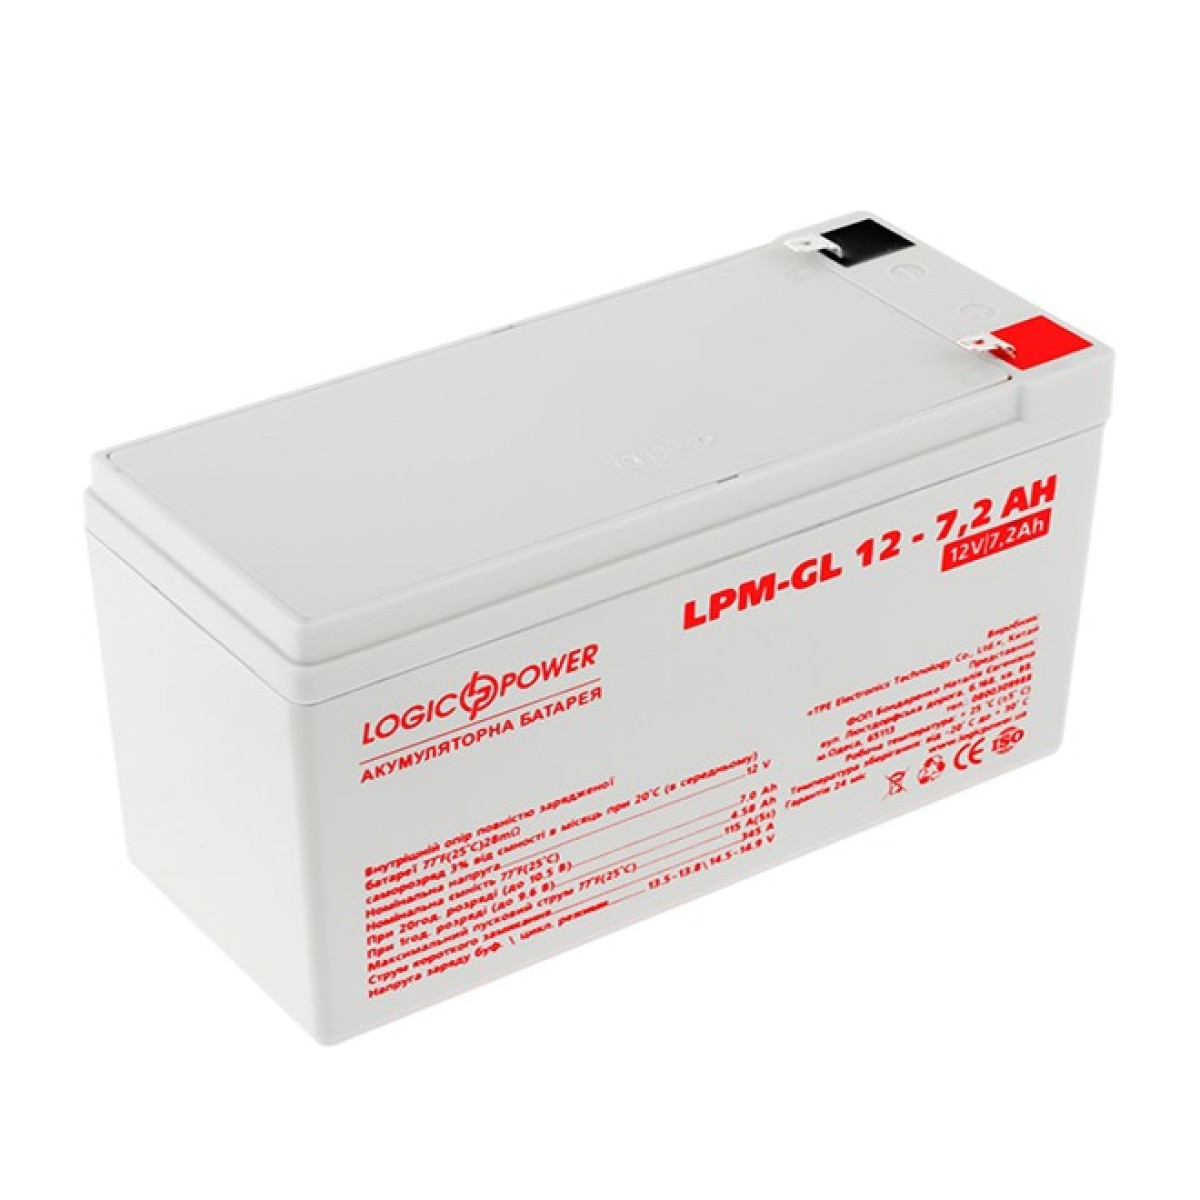 Аккумулятор гелевый LPM-GL 12 - 7,2 AH 256_256.jpg